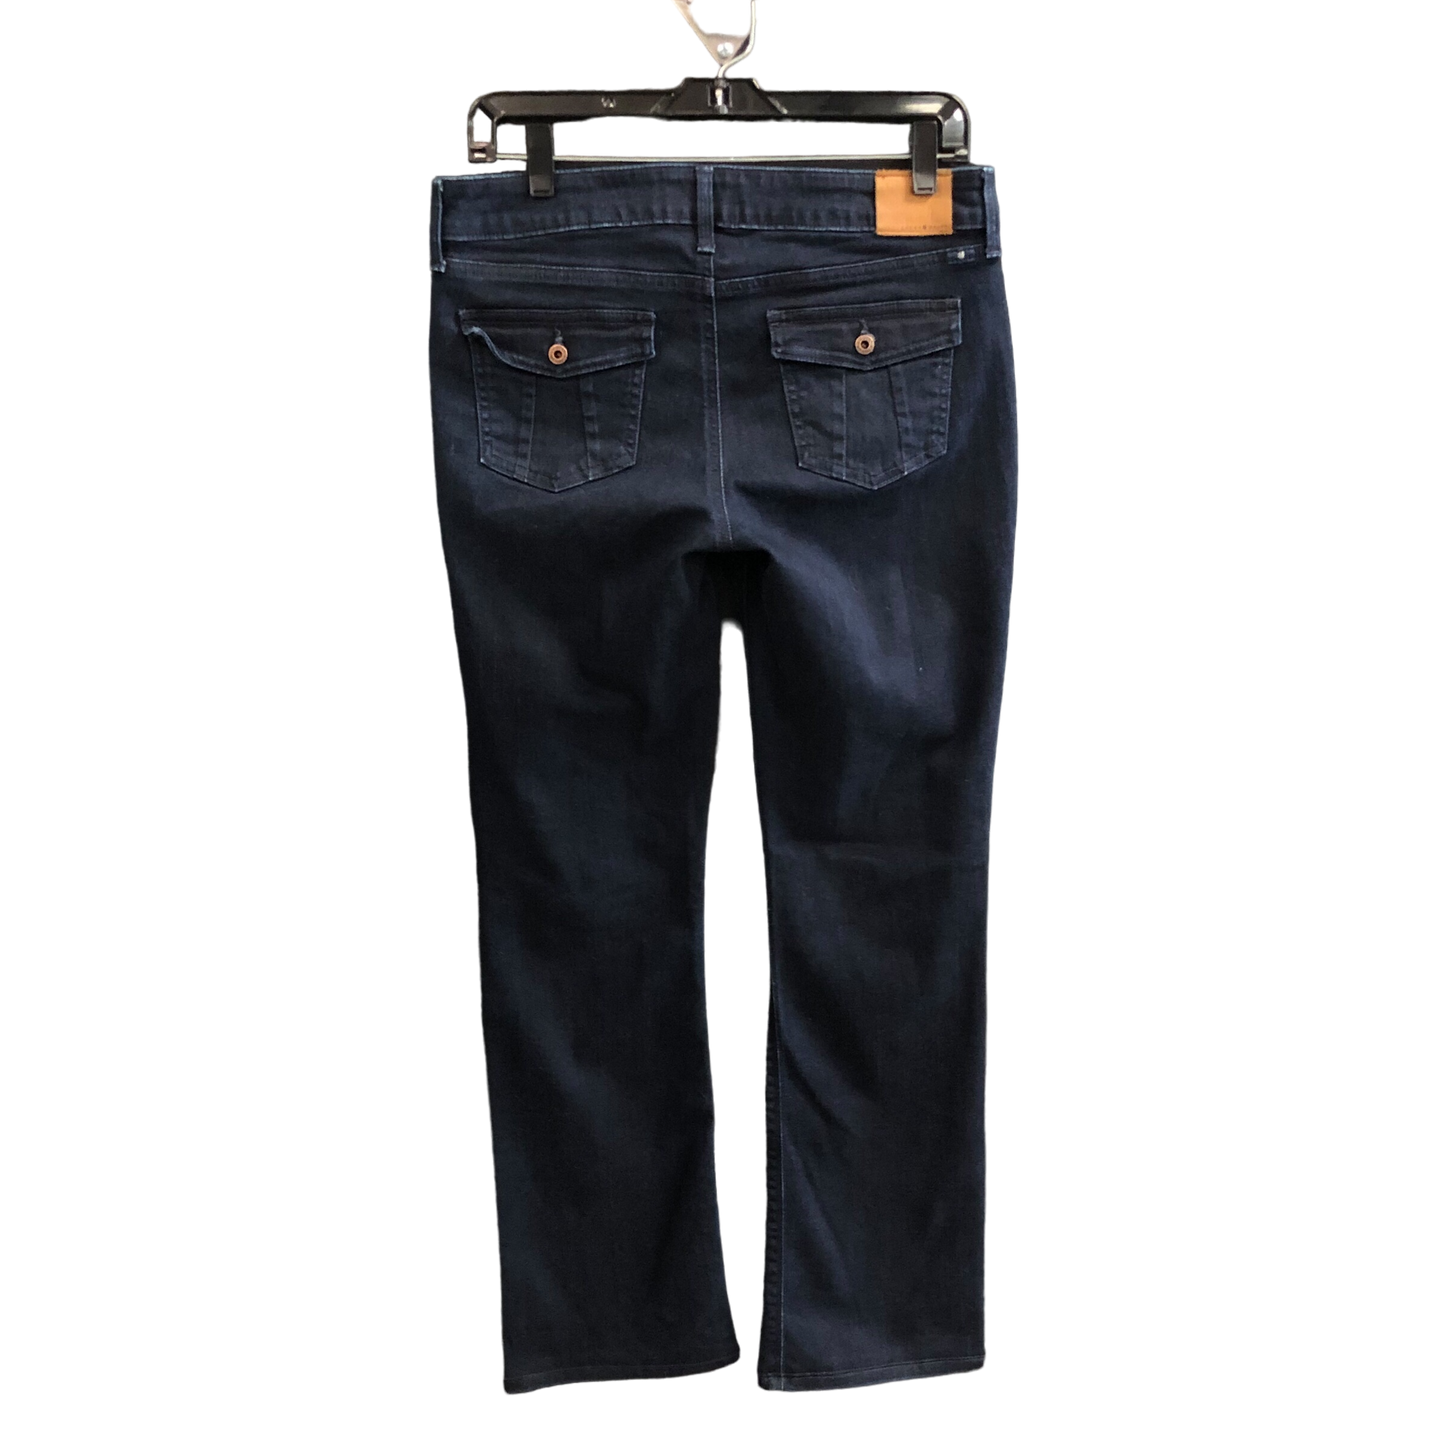 Blue Denim Jeans Boot Cut Lucky Brand, Size 8